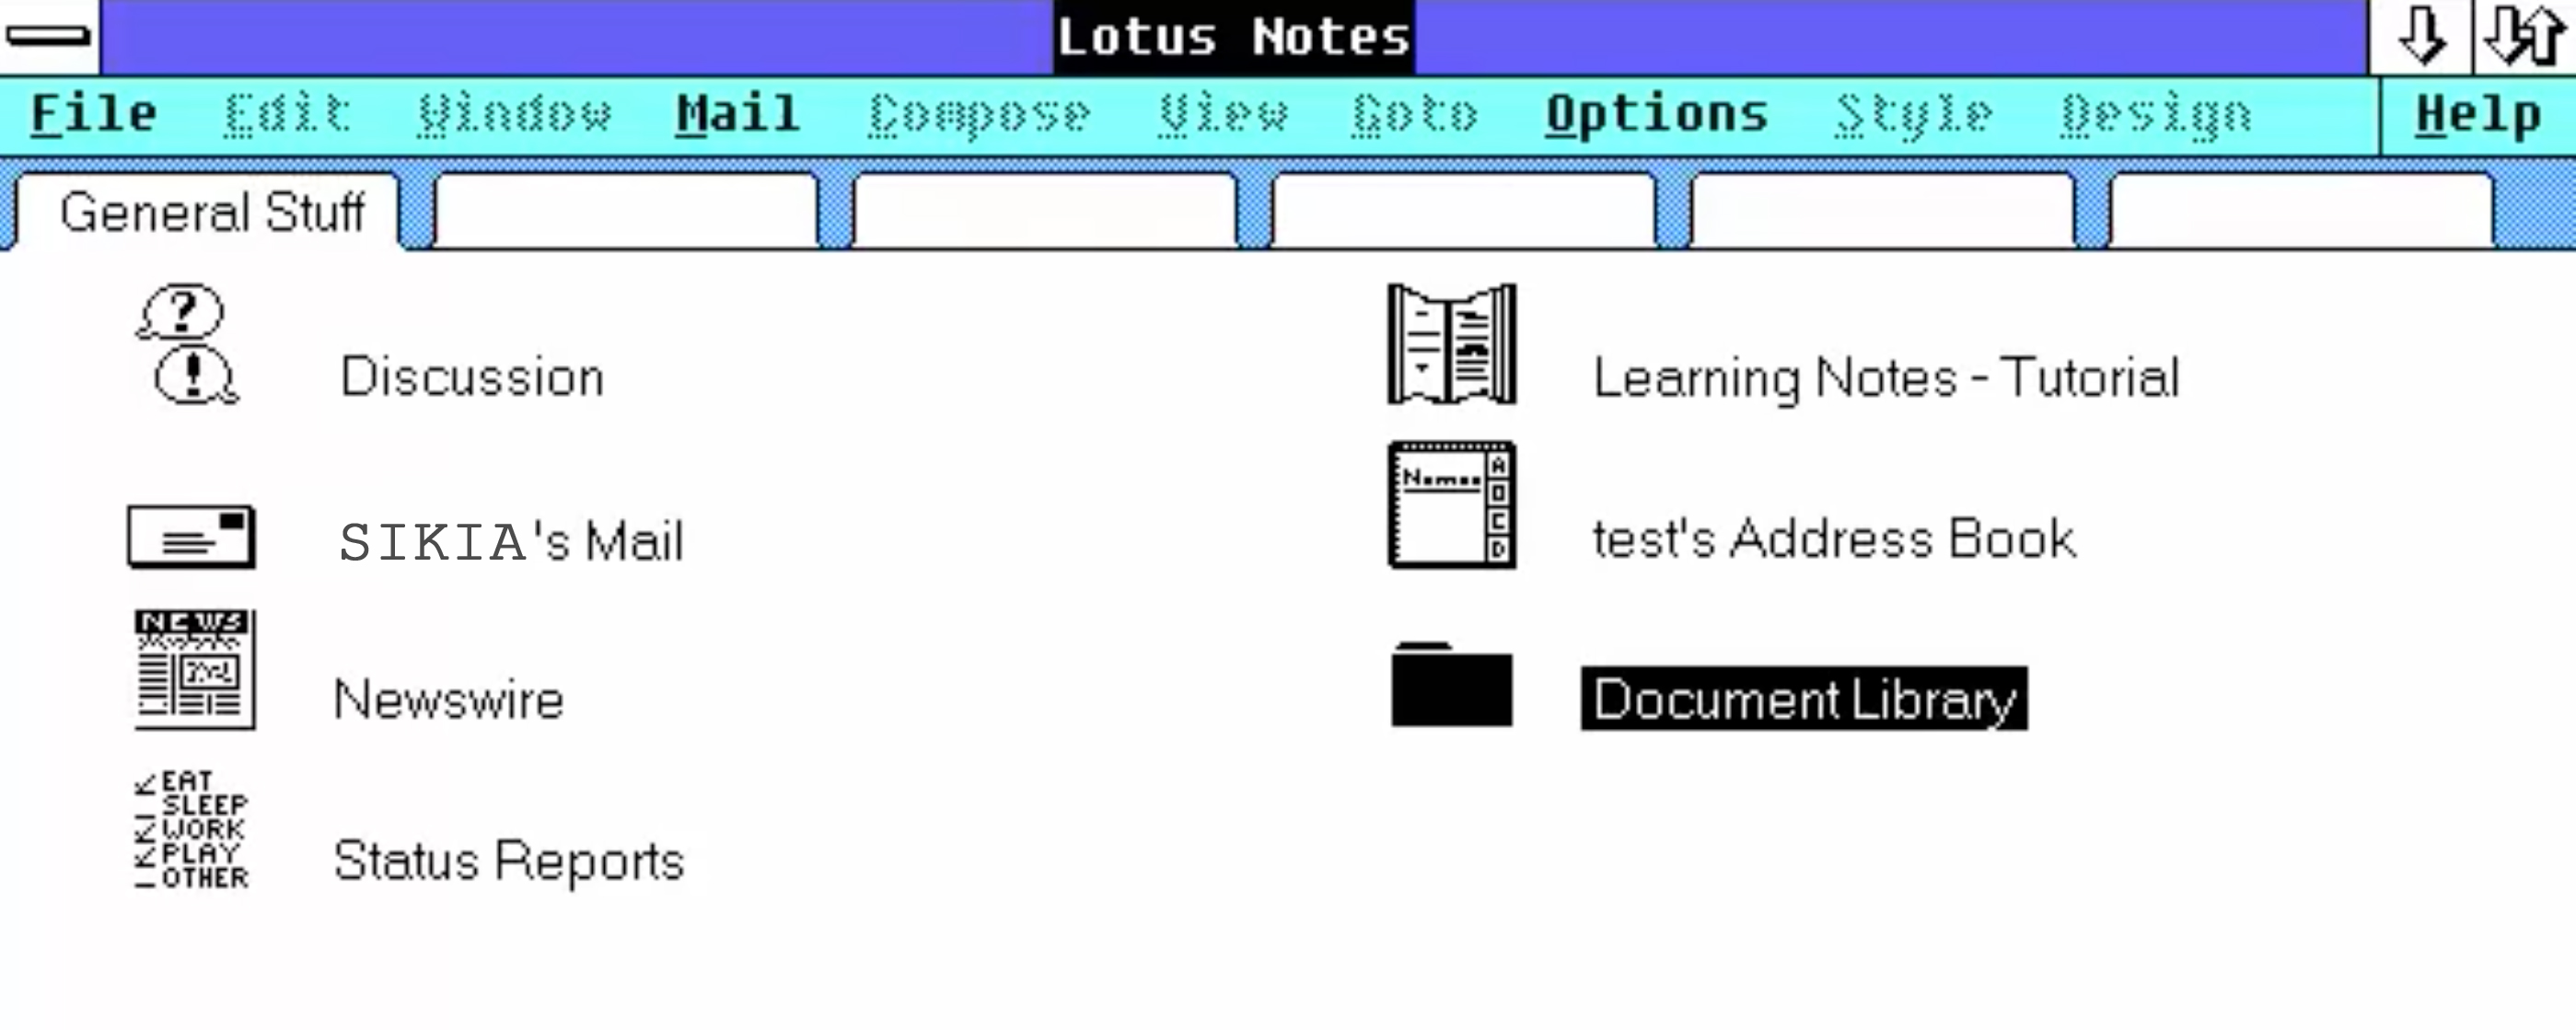 Lotus Notes Version 1.0